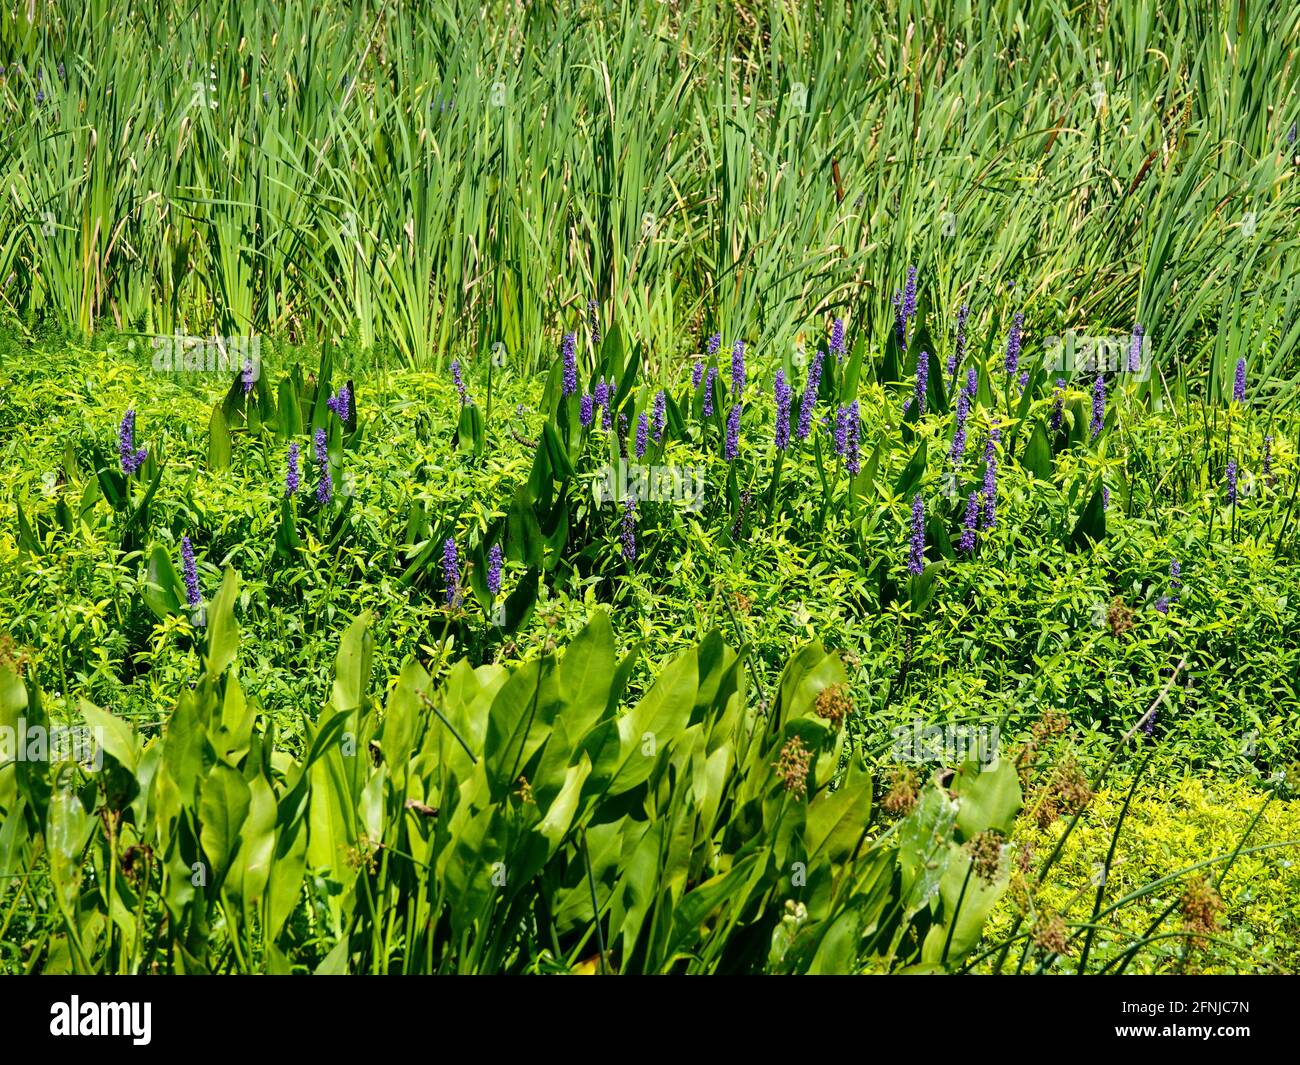 Mezcla de plantas acuáticas, incluyendo las flores púrpuras de Pontederia cordata, pickerelweed, creciendo en un área de humedales, Alachua County, Florida, Estados Unidos. Foto de stock